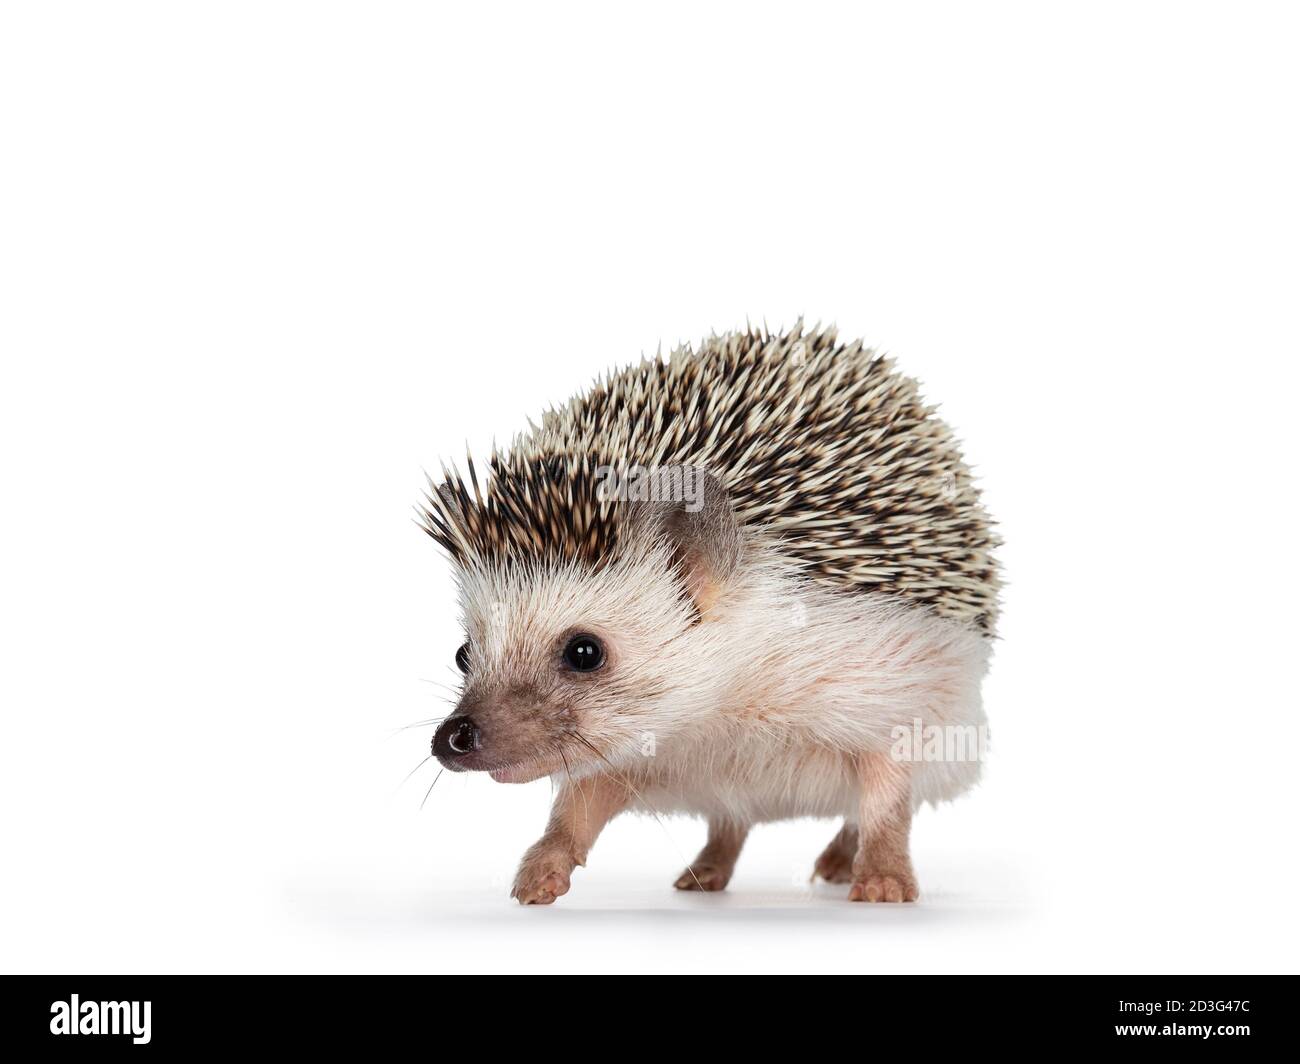 Carino adulto africano pygme hedgehog, a piedi in avanti guardando dritto. Isolato su sfondo bianco. Foto Stock